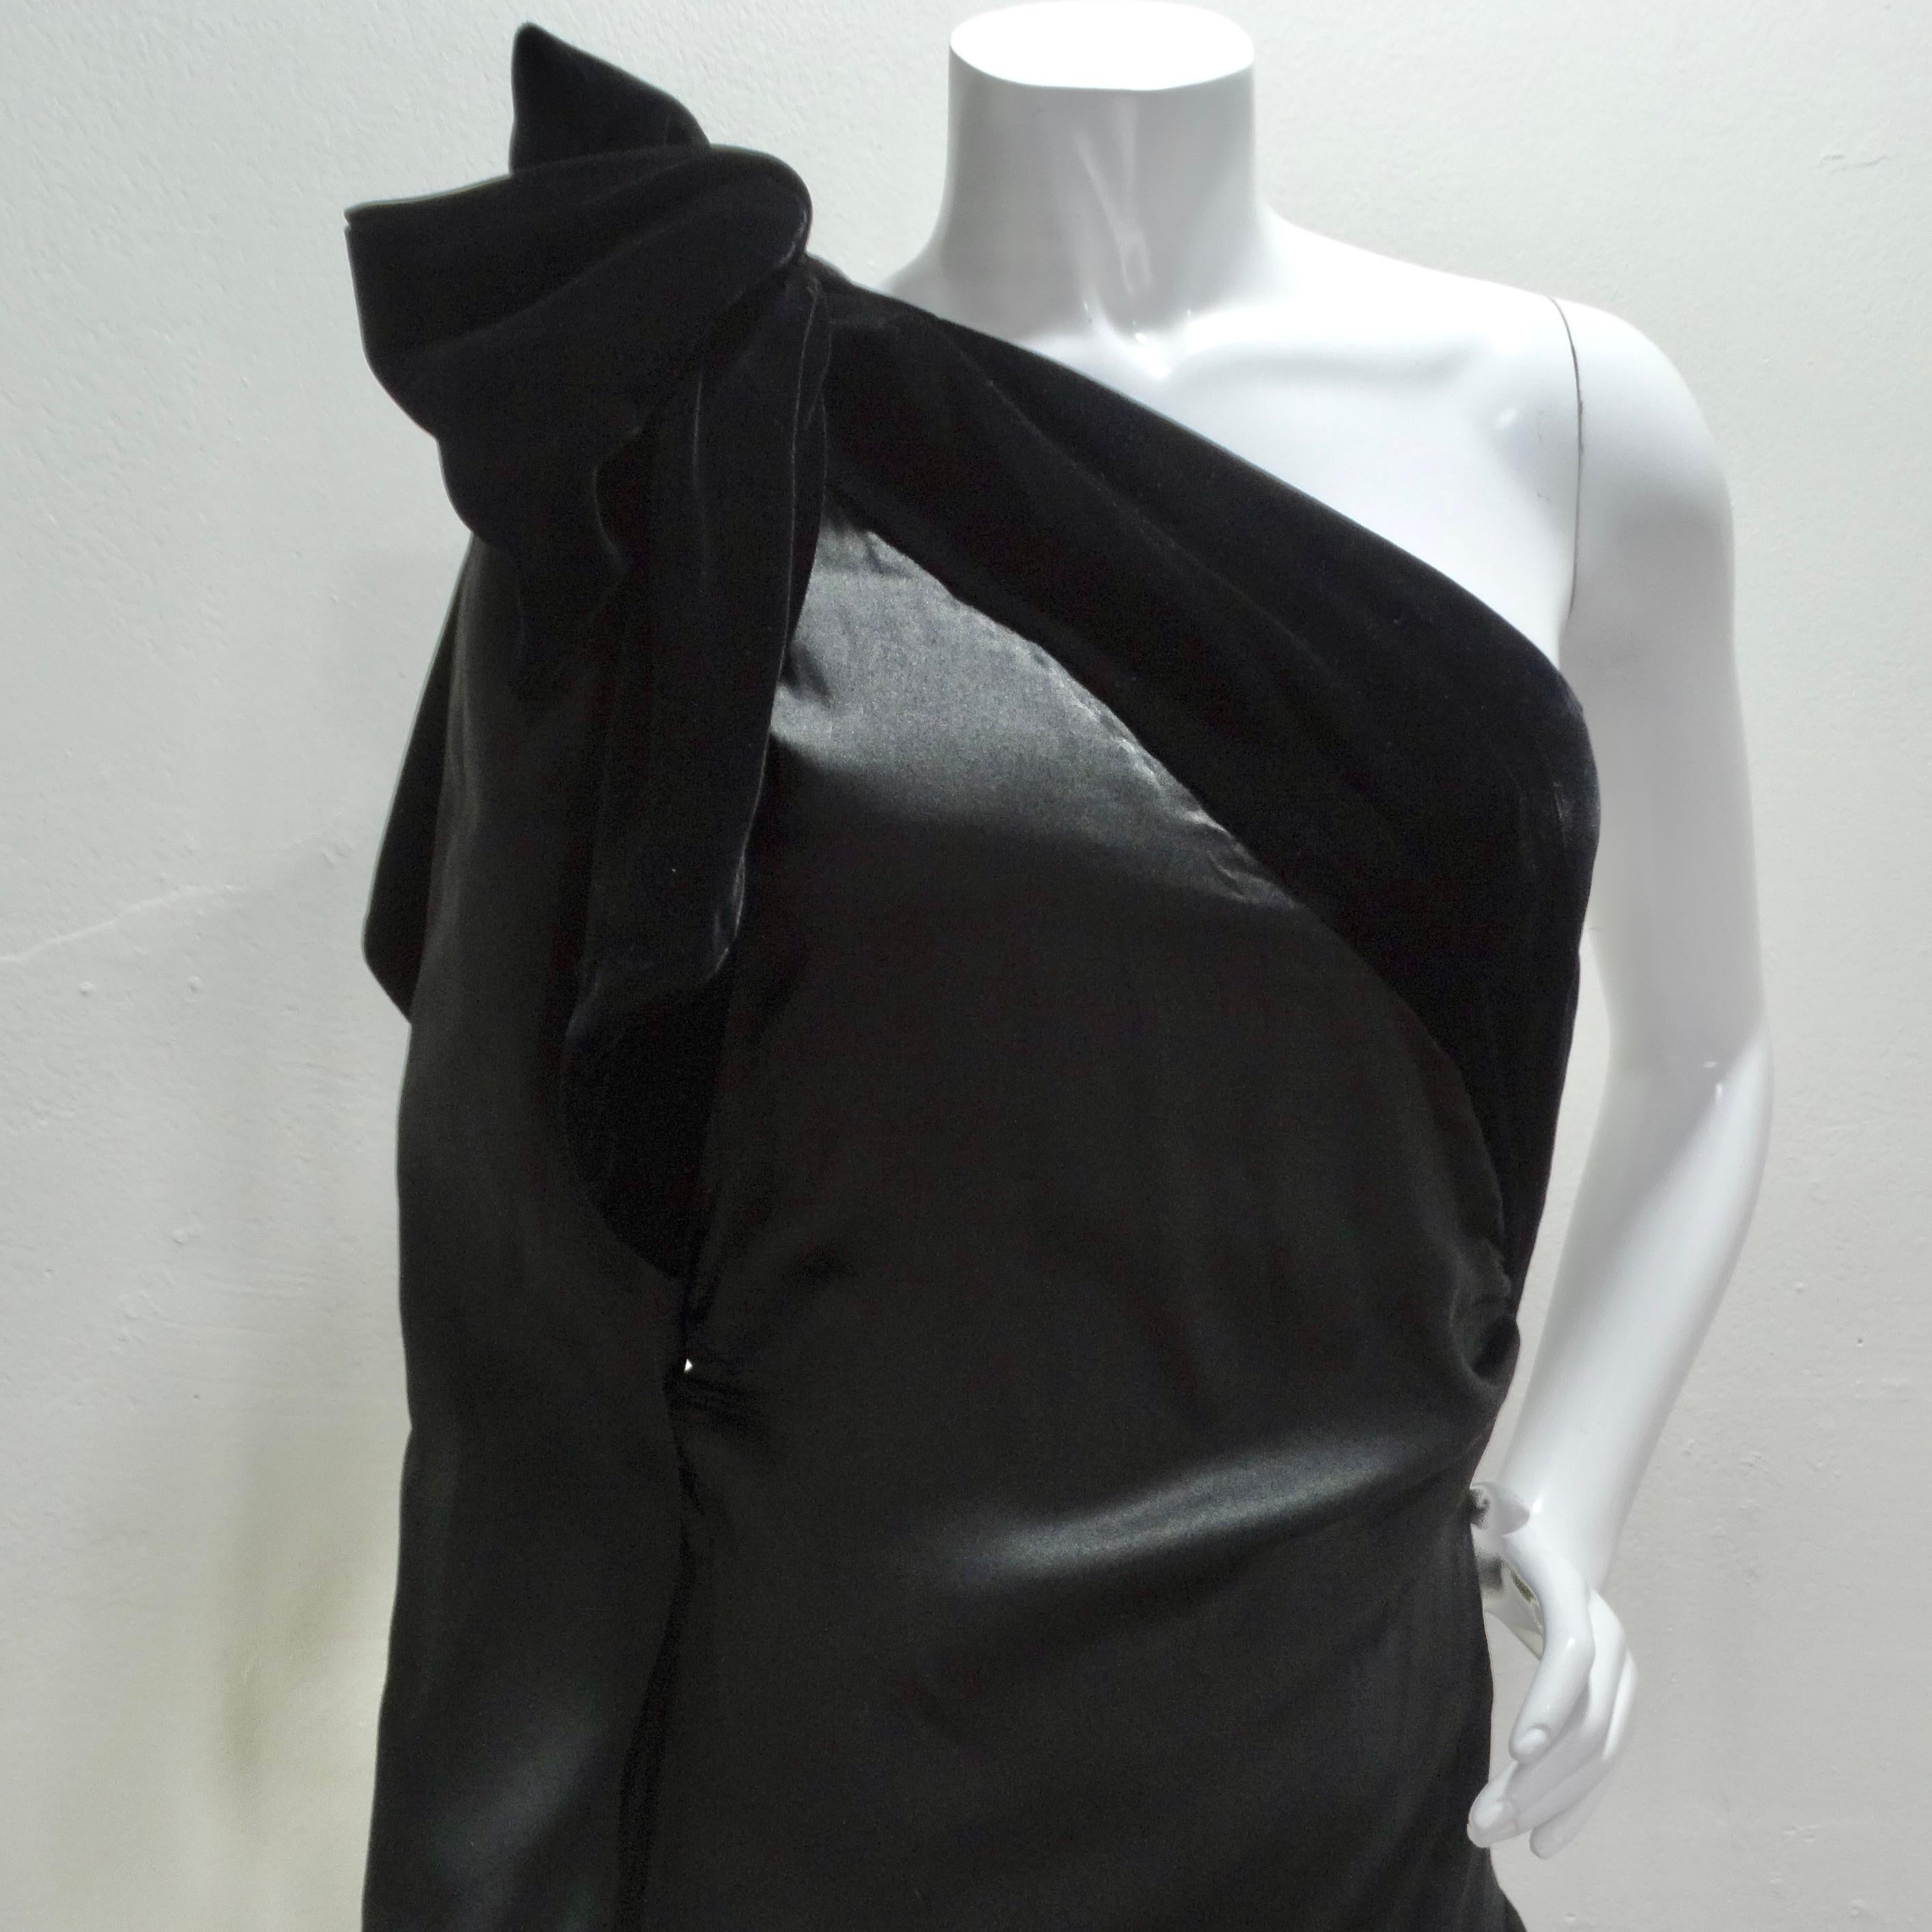 

ChatGPT
ChatGPT
Das Lanvin Haute Couture 1980s Velvet Bias Cut Black Gown ist ein atemberaubendes Meisterwerk, das zeitlose Eleganz und Raffinesse verkörpert. Dieses unglaubliche Kleid zeigt die für Lanvin charakteristische Handwerkskunst und